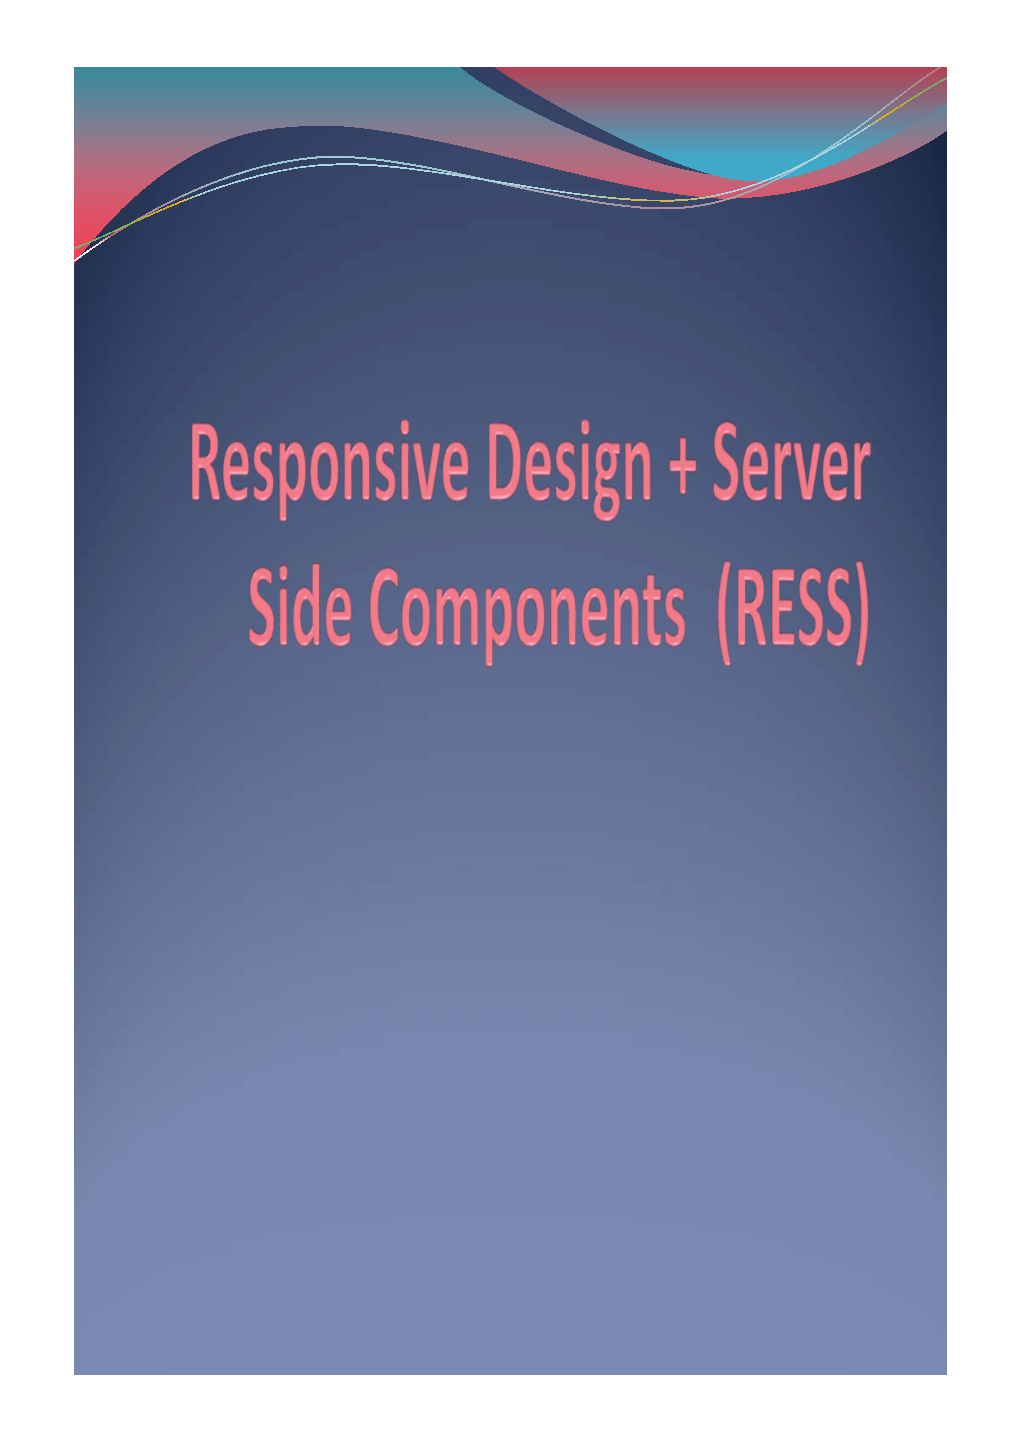 Responsive Design + Server Side Components (RESS)